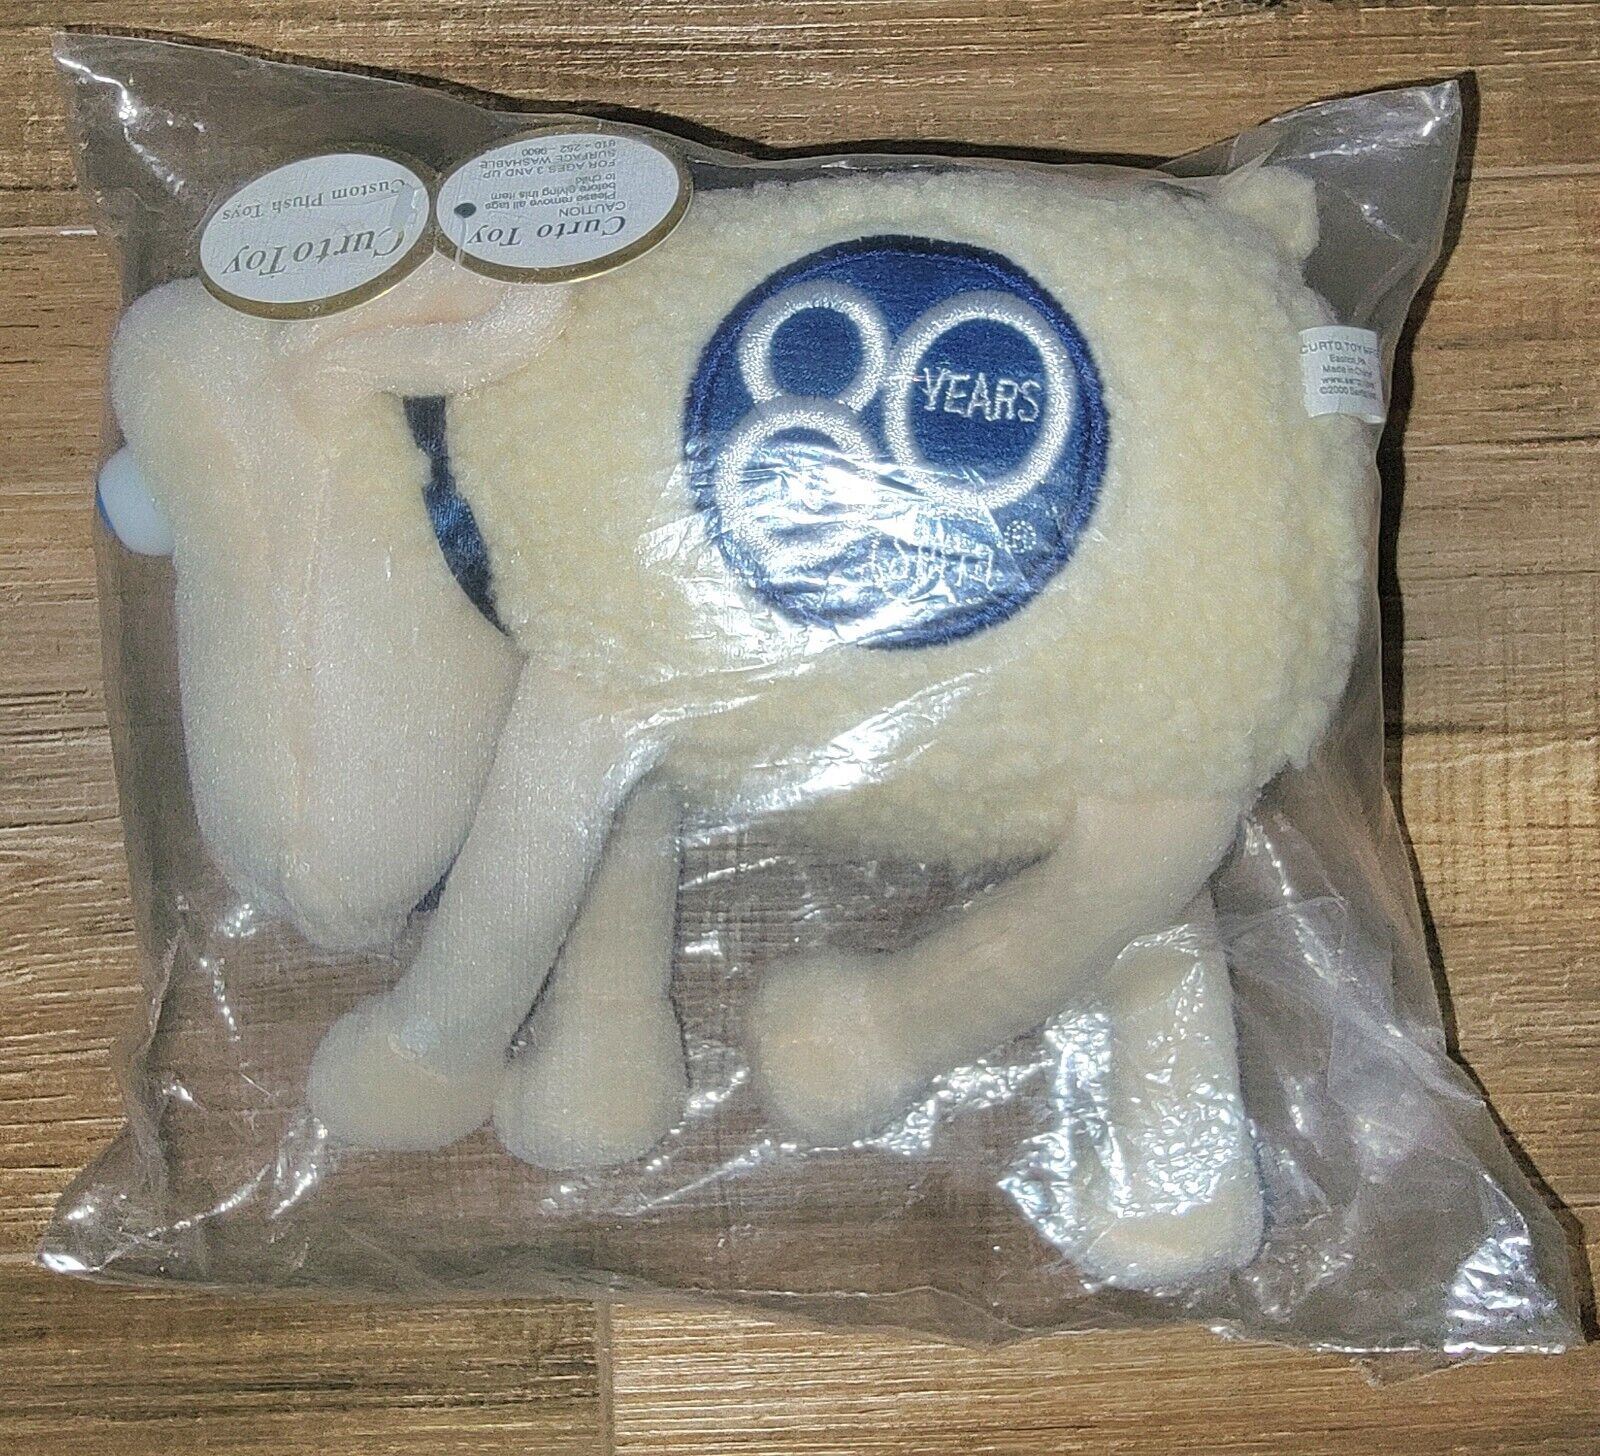 Serta Mattress Sheep 80 Years Counting Sheep Lamb Plush Stuffed 8” NWT